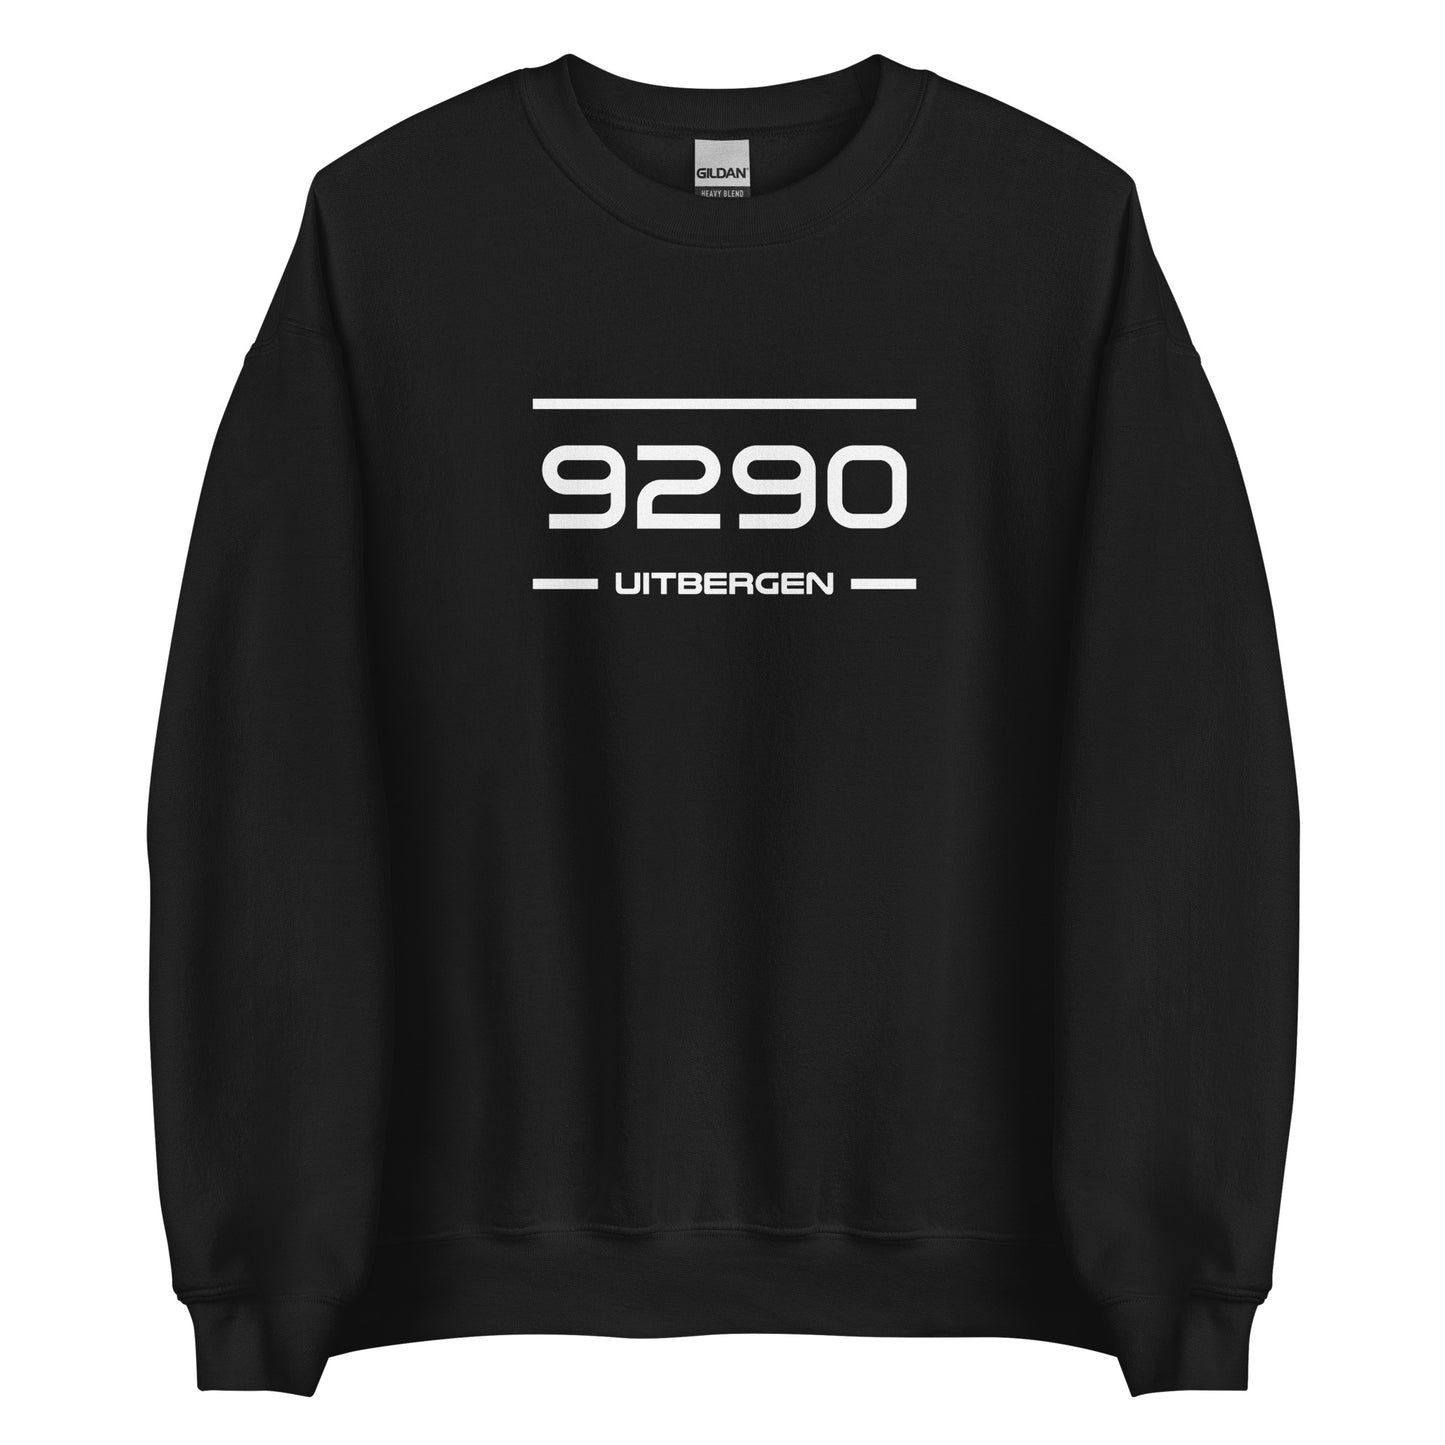 Sweater - 9290 - Uitbergen (M/V)